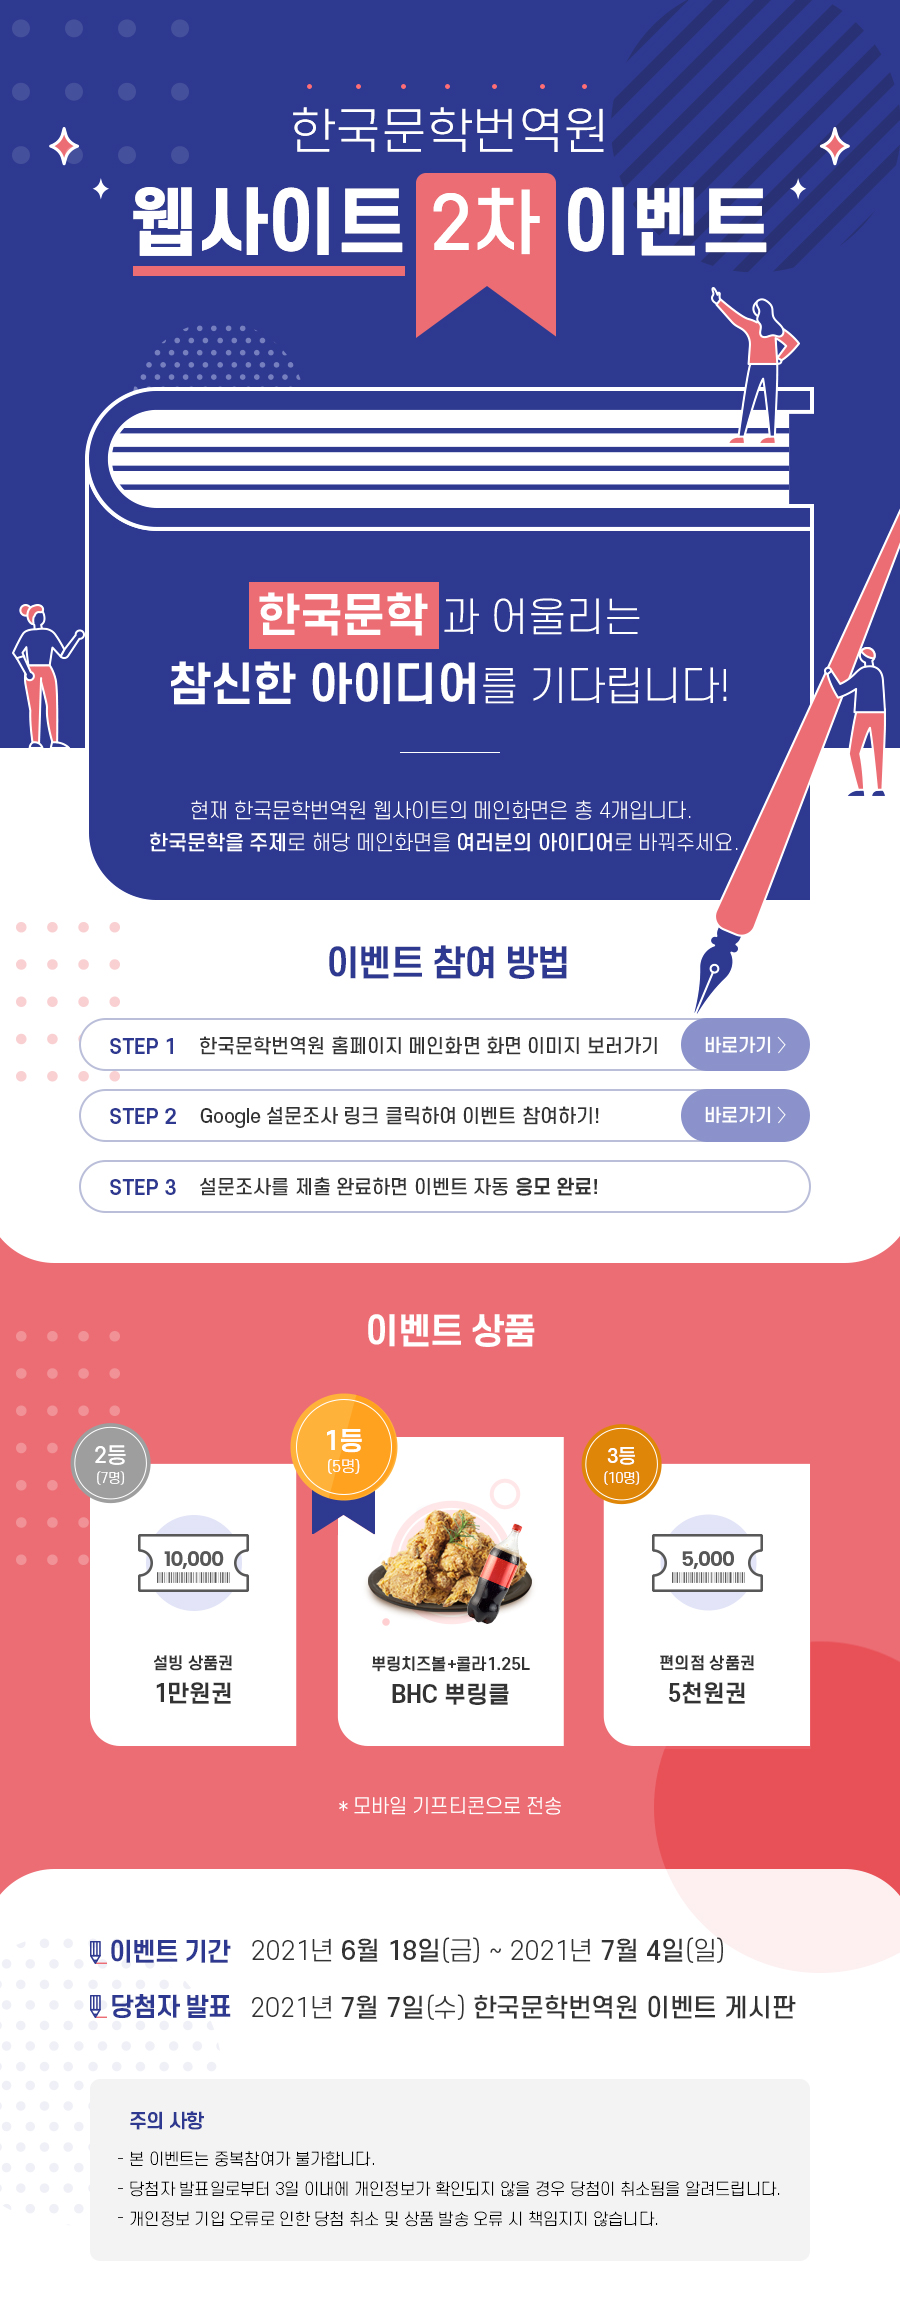 한국문학번역원 웹사이트 2차 이벤트 포스터